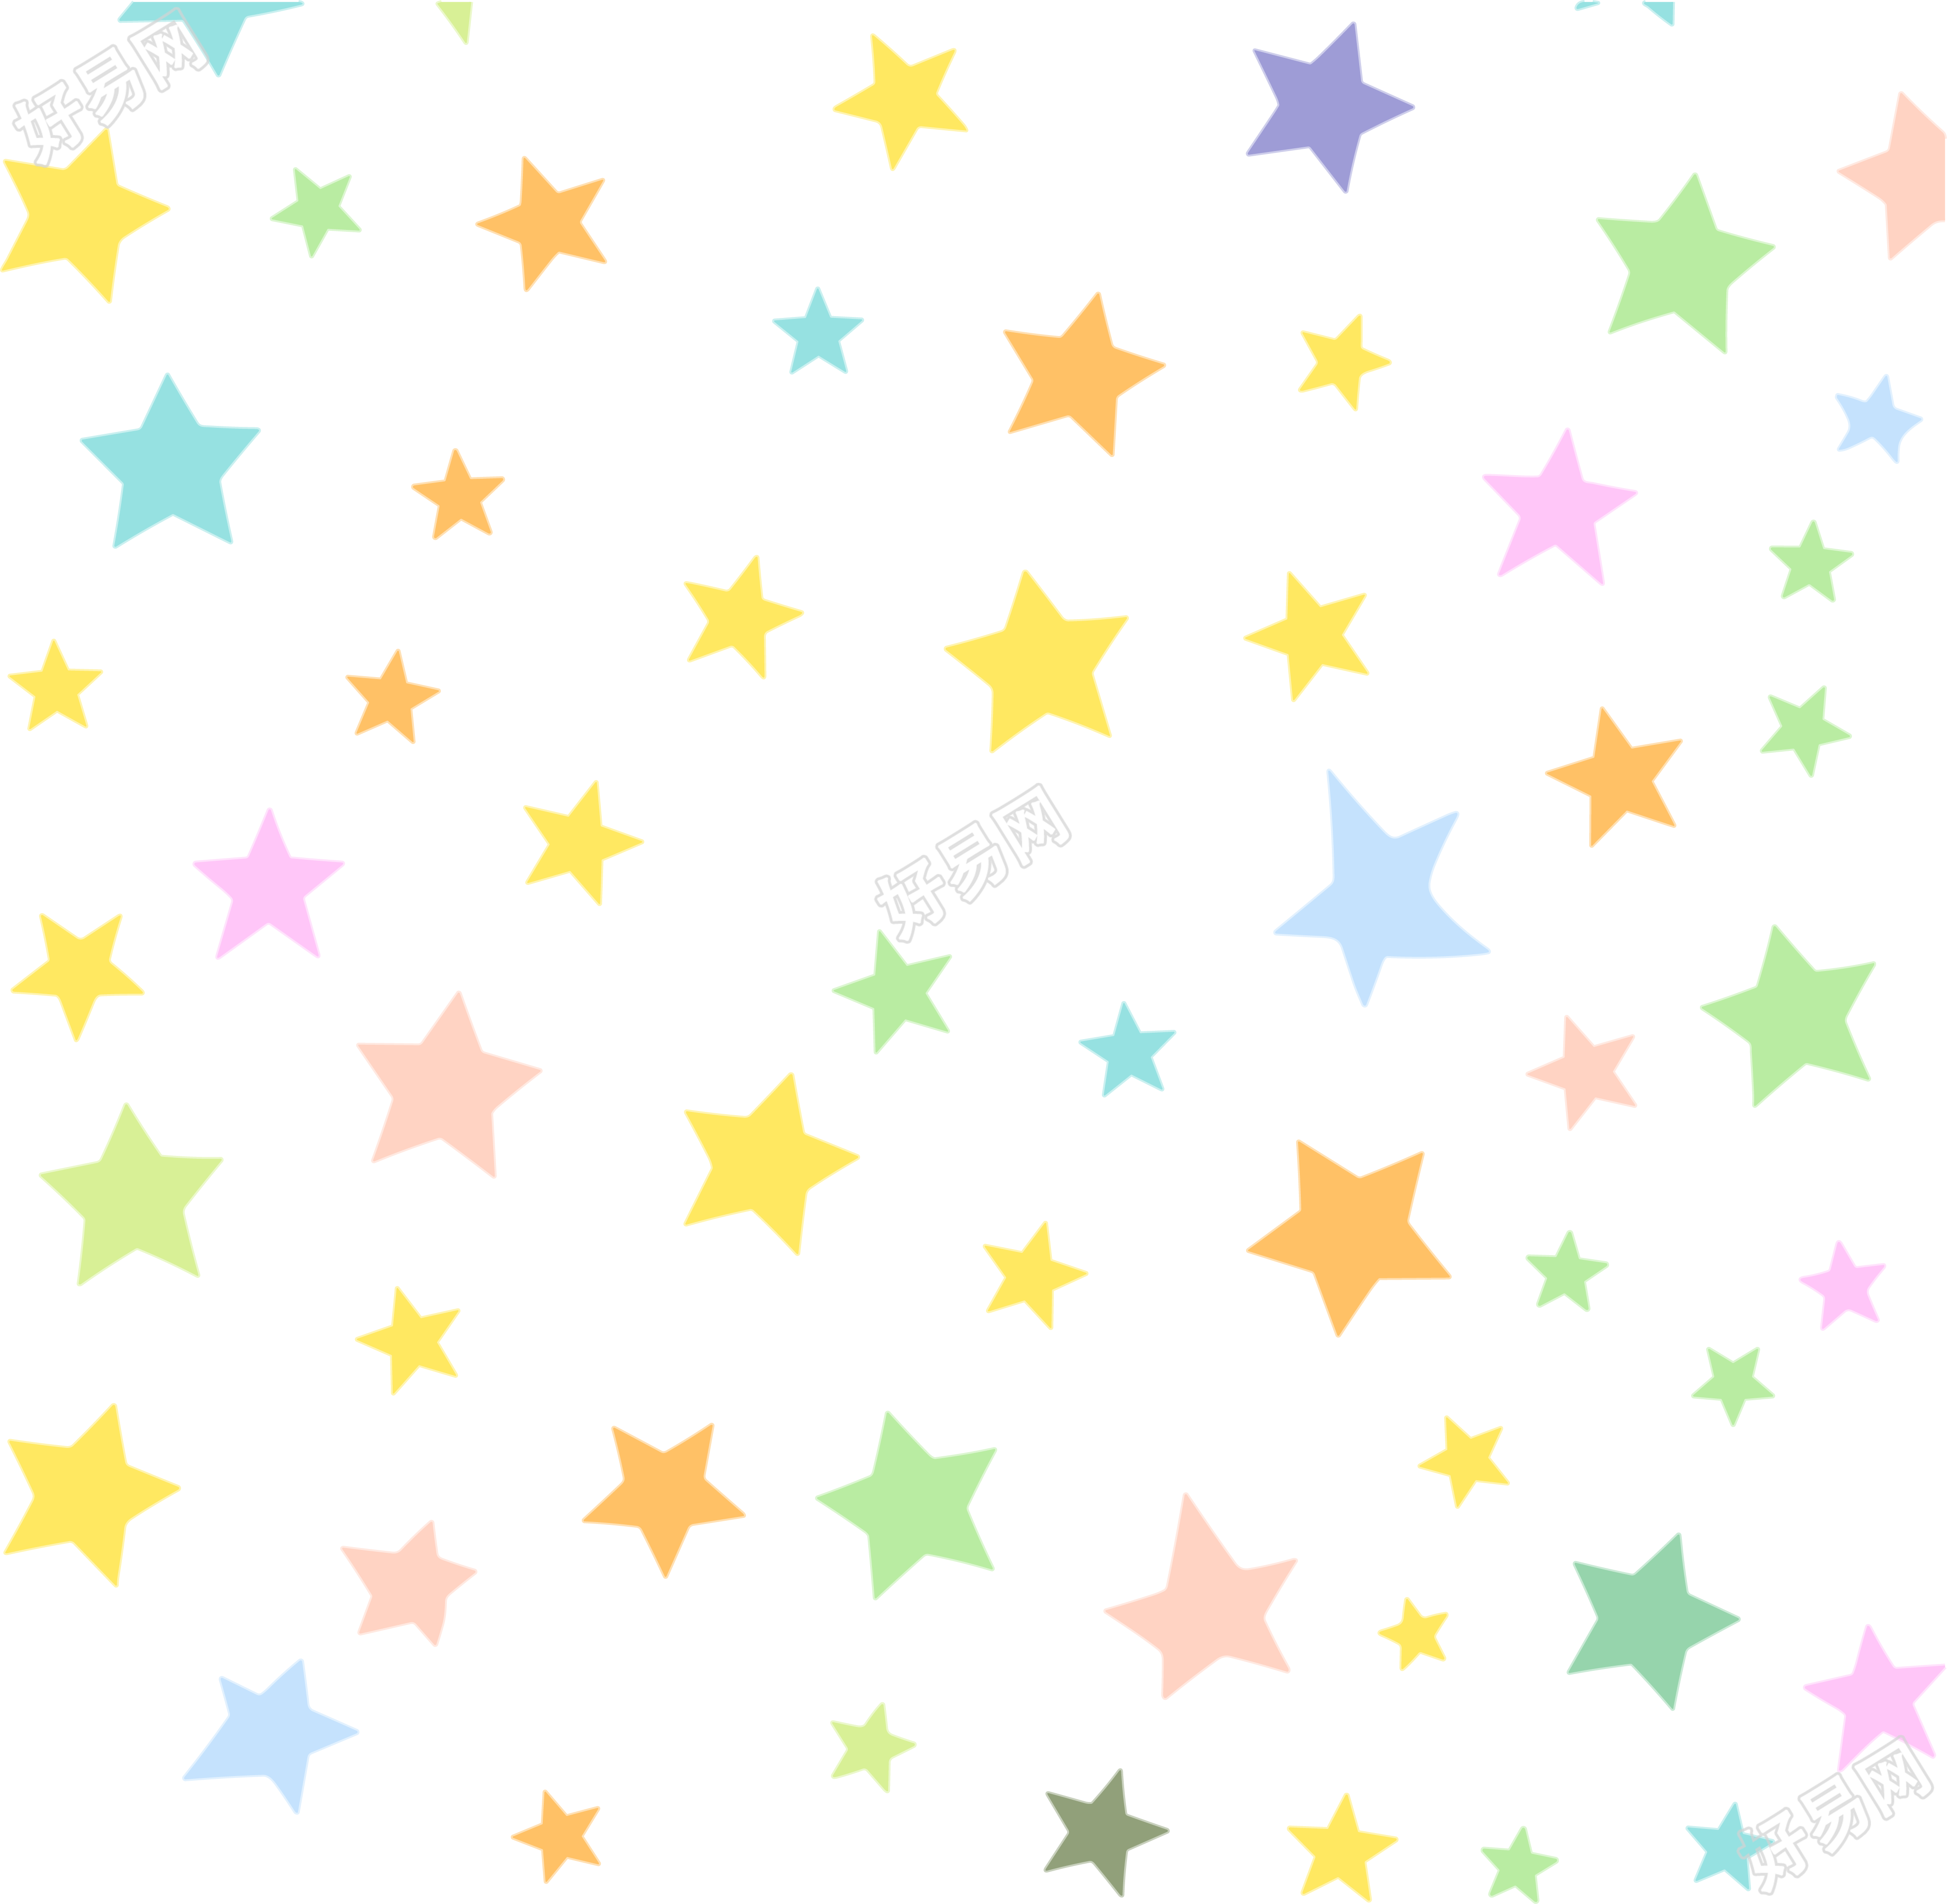 星星背景矢量图素材